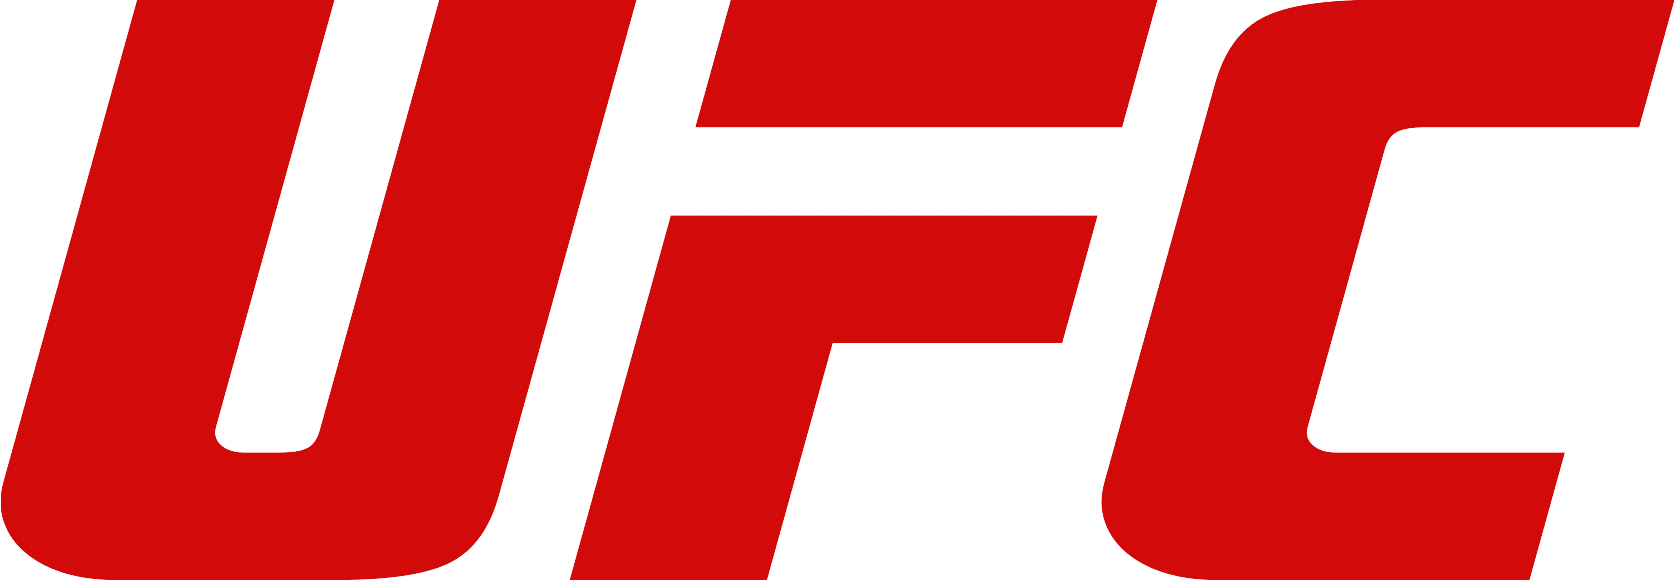 UFC_Logo-1.png